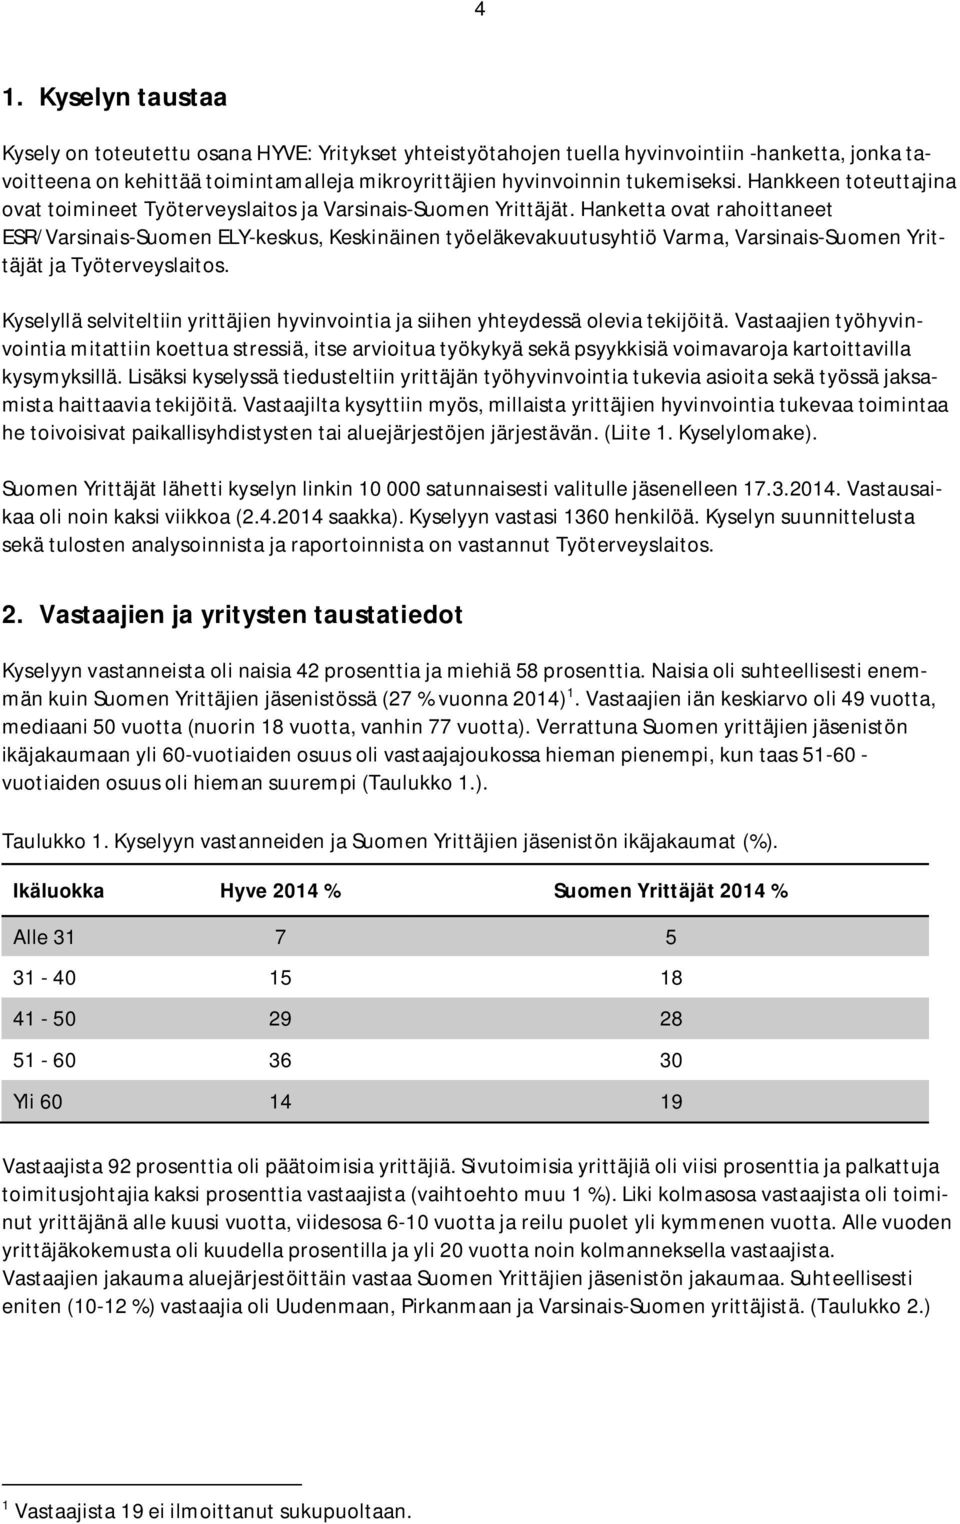 Hanketta ovat rahoittaneet ESR/Varsinais-Suomen ELY-keskus, Keskinäinen työeläkevakuutusyhtiö Varma, Varsinais-Suomen Yrittäjät ja Työterveyslaitos.